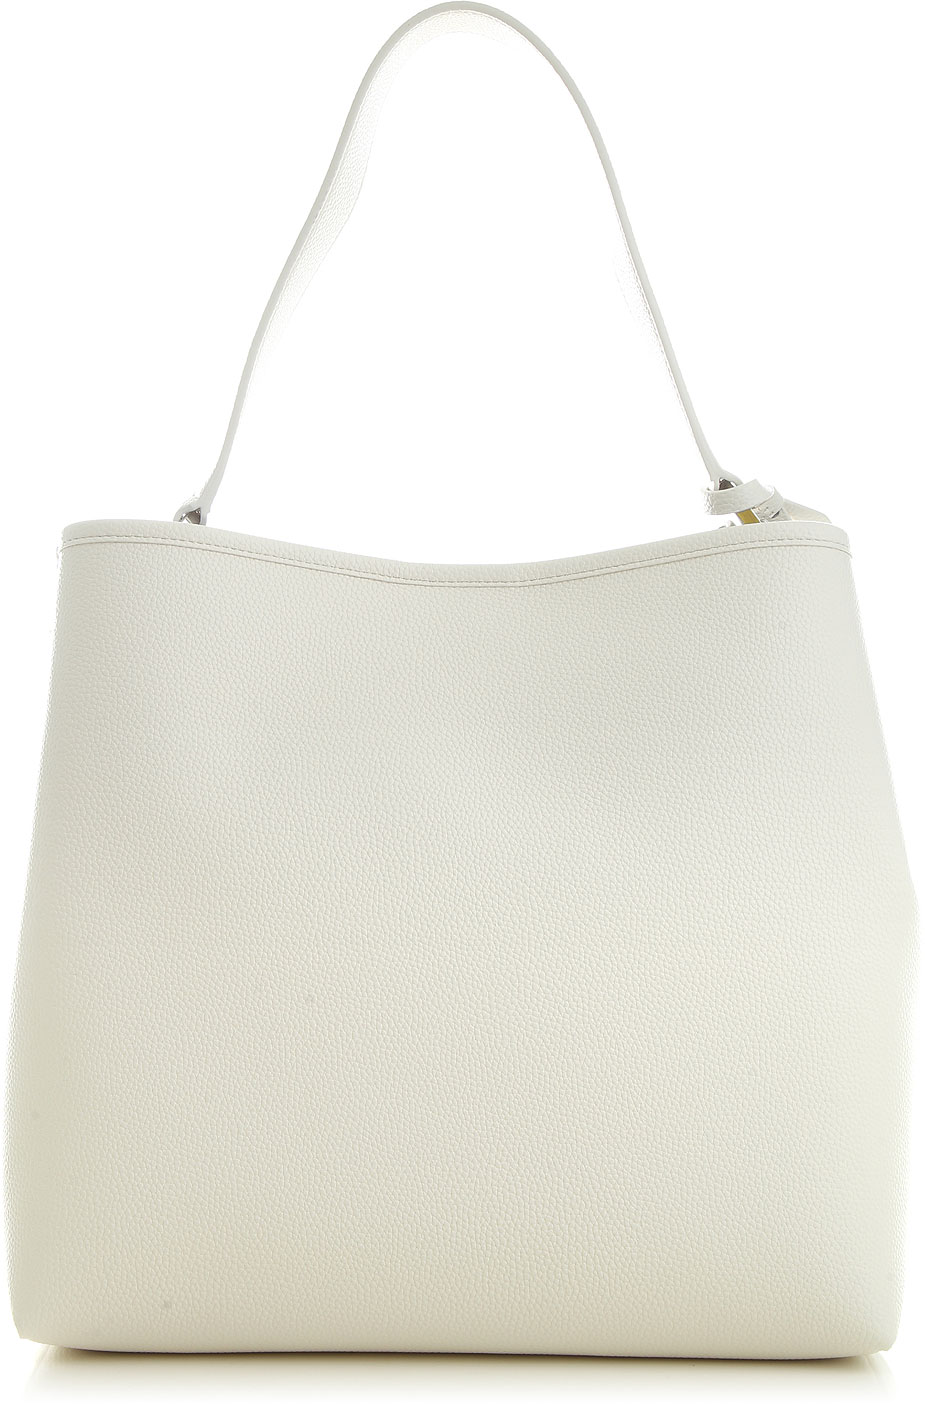 Handbags Emporio Armani, Style code: y3e168-yf05e-87036